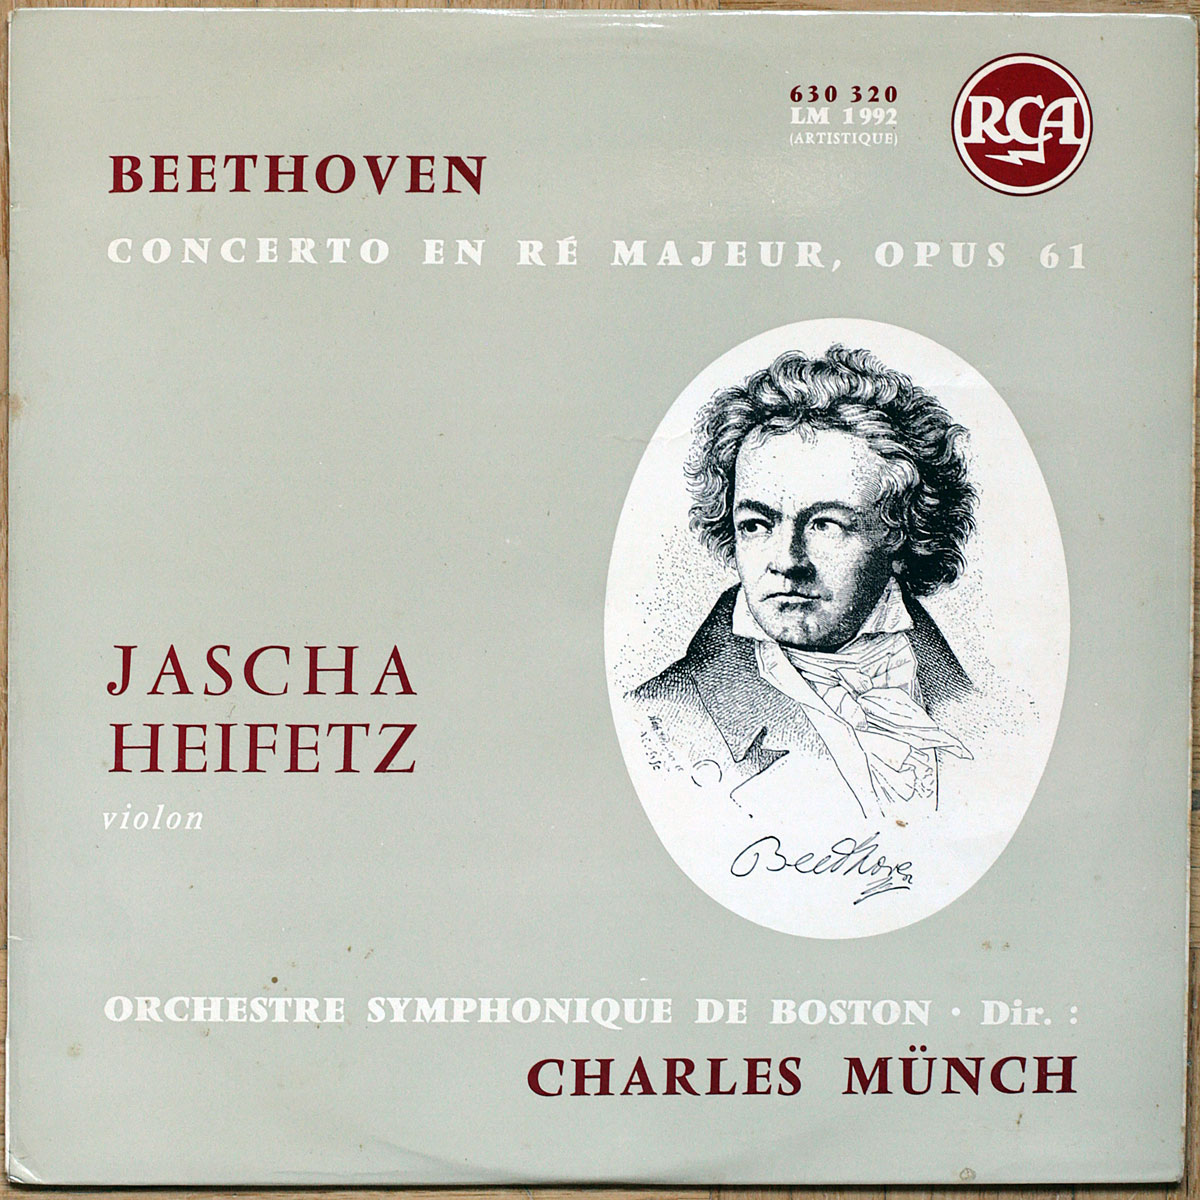 Beethoven Concerto Pour Violon Rca 630 320 Jascha Heifetz Orchestre Symphonique De